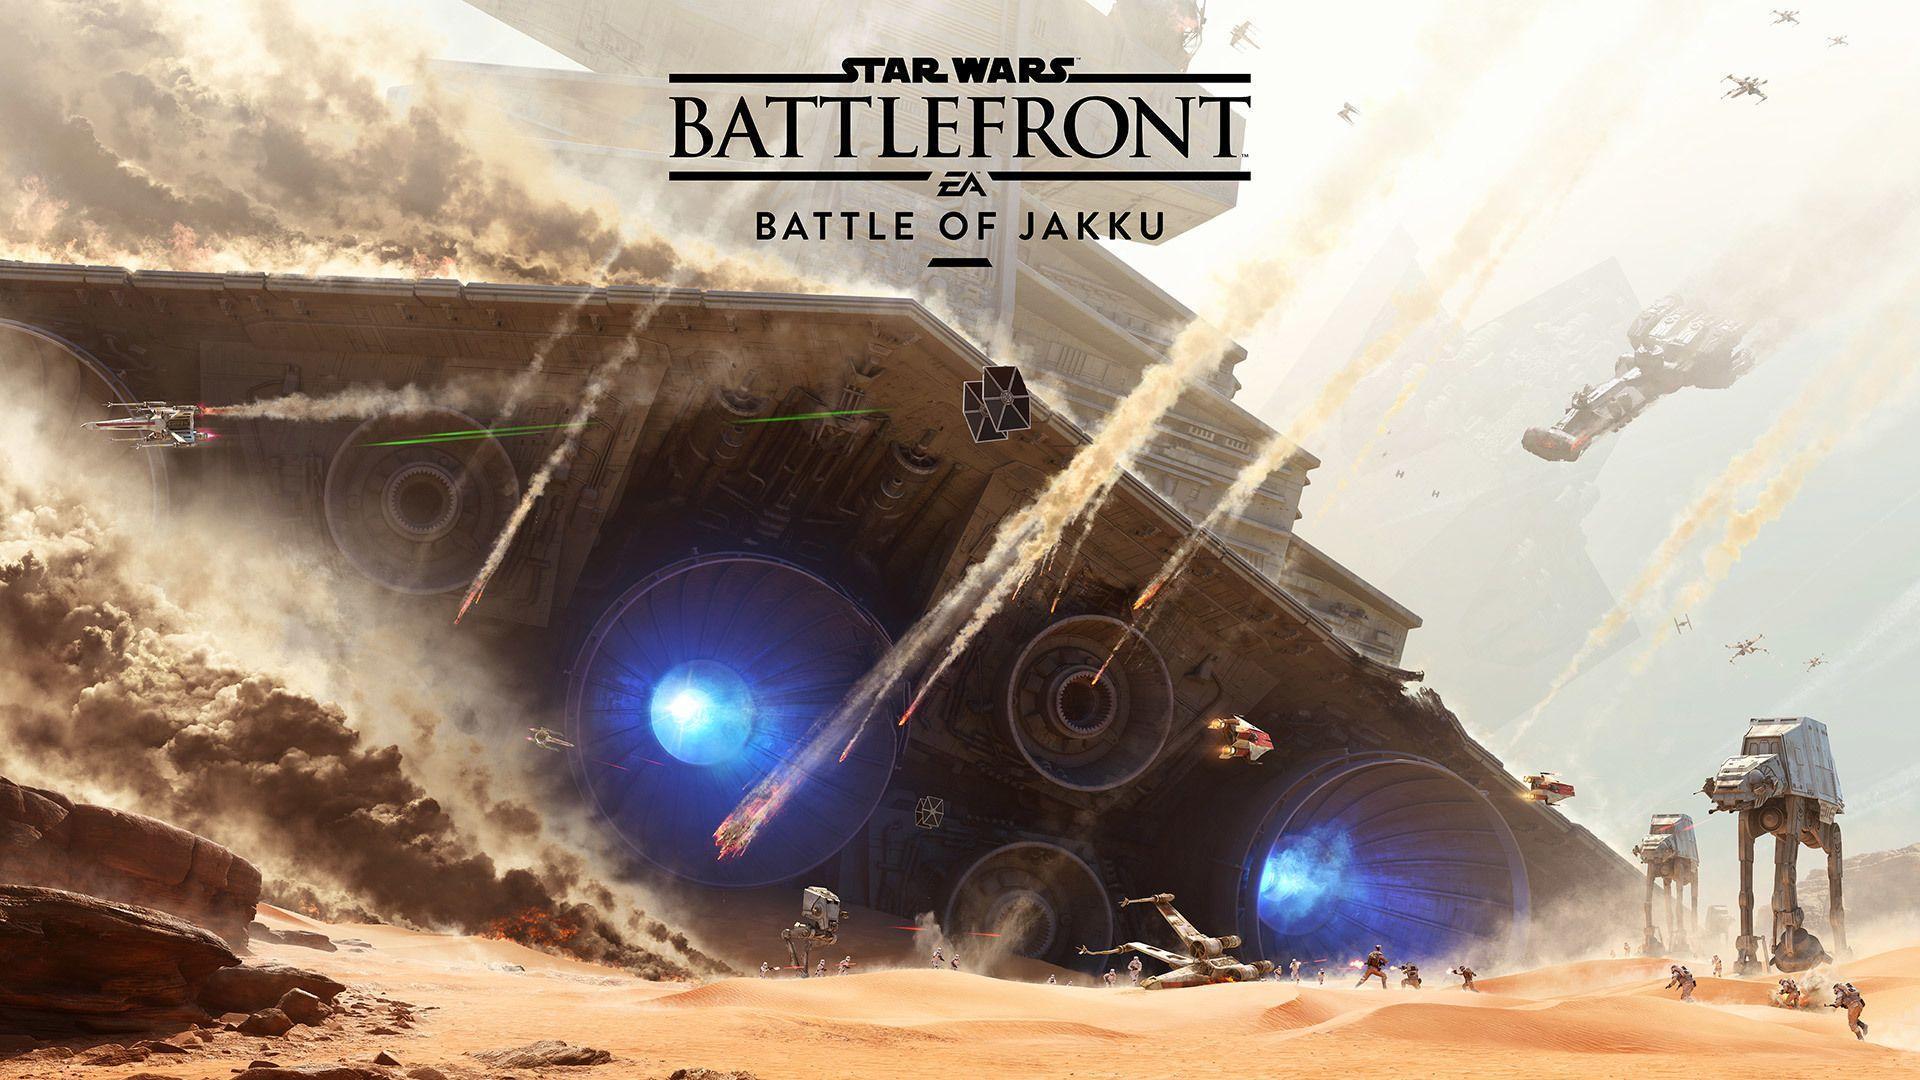 Star Wars Battlefront Battle of Jakku Wallpaper